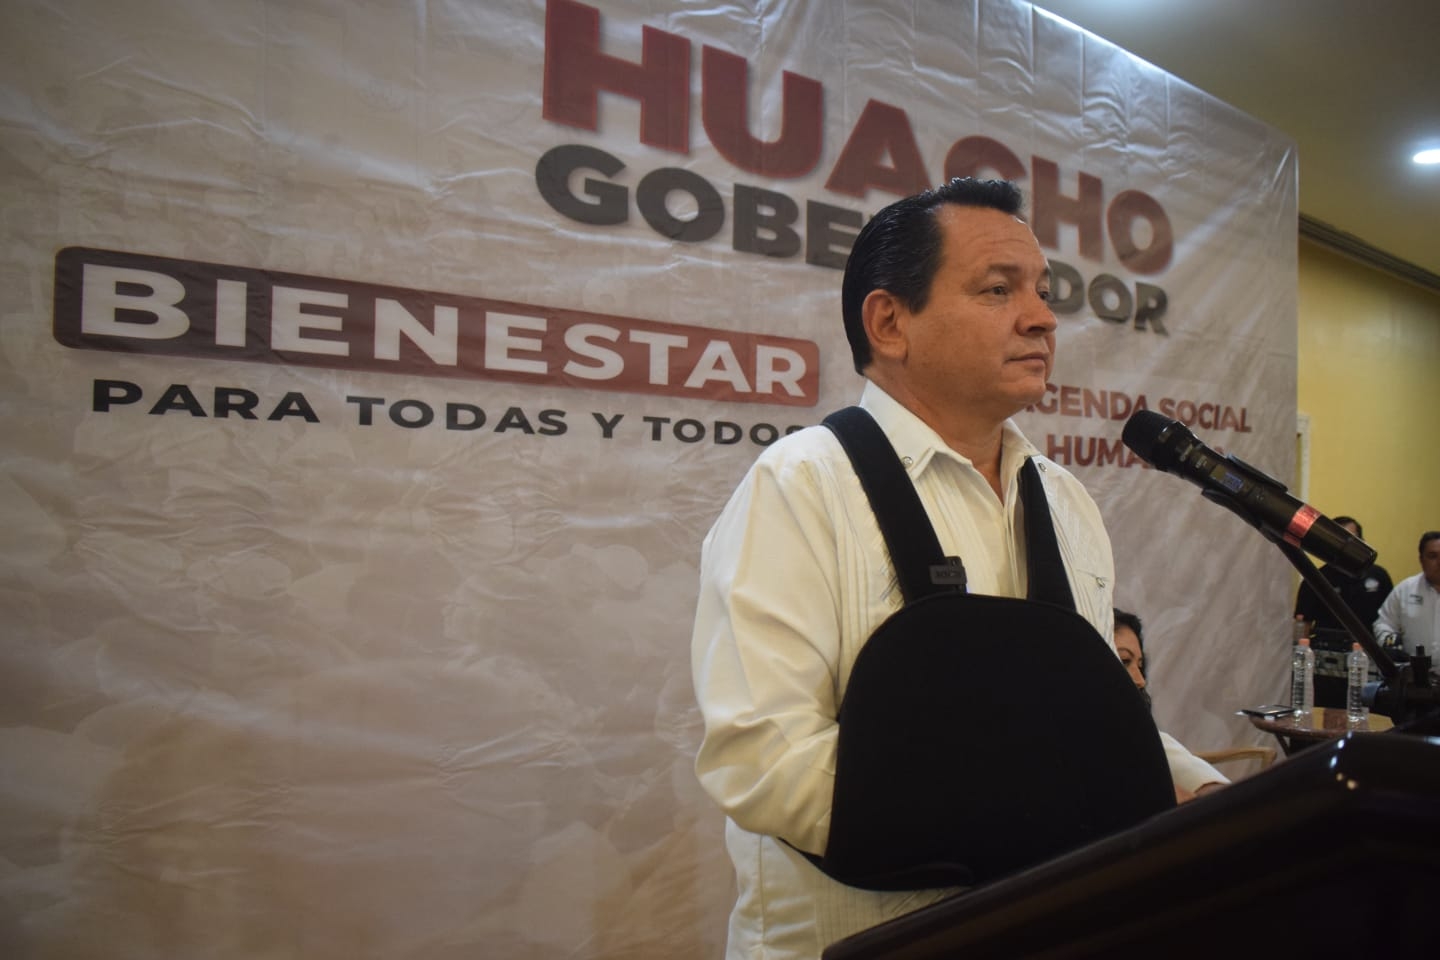 La agenda Social Humanista de Joaquín Díaz Mena busca mejorar el bienestar en Yucatán